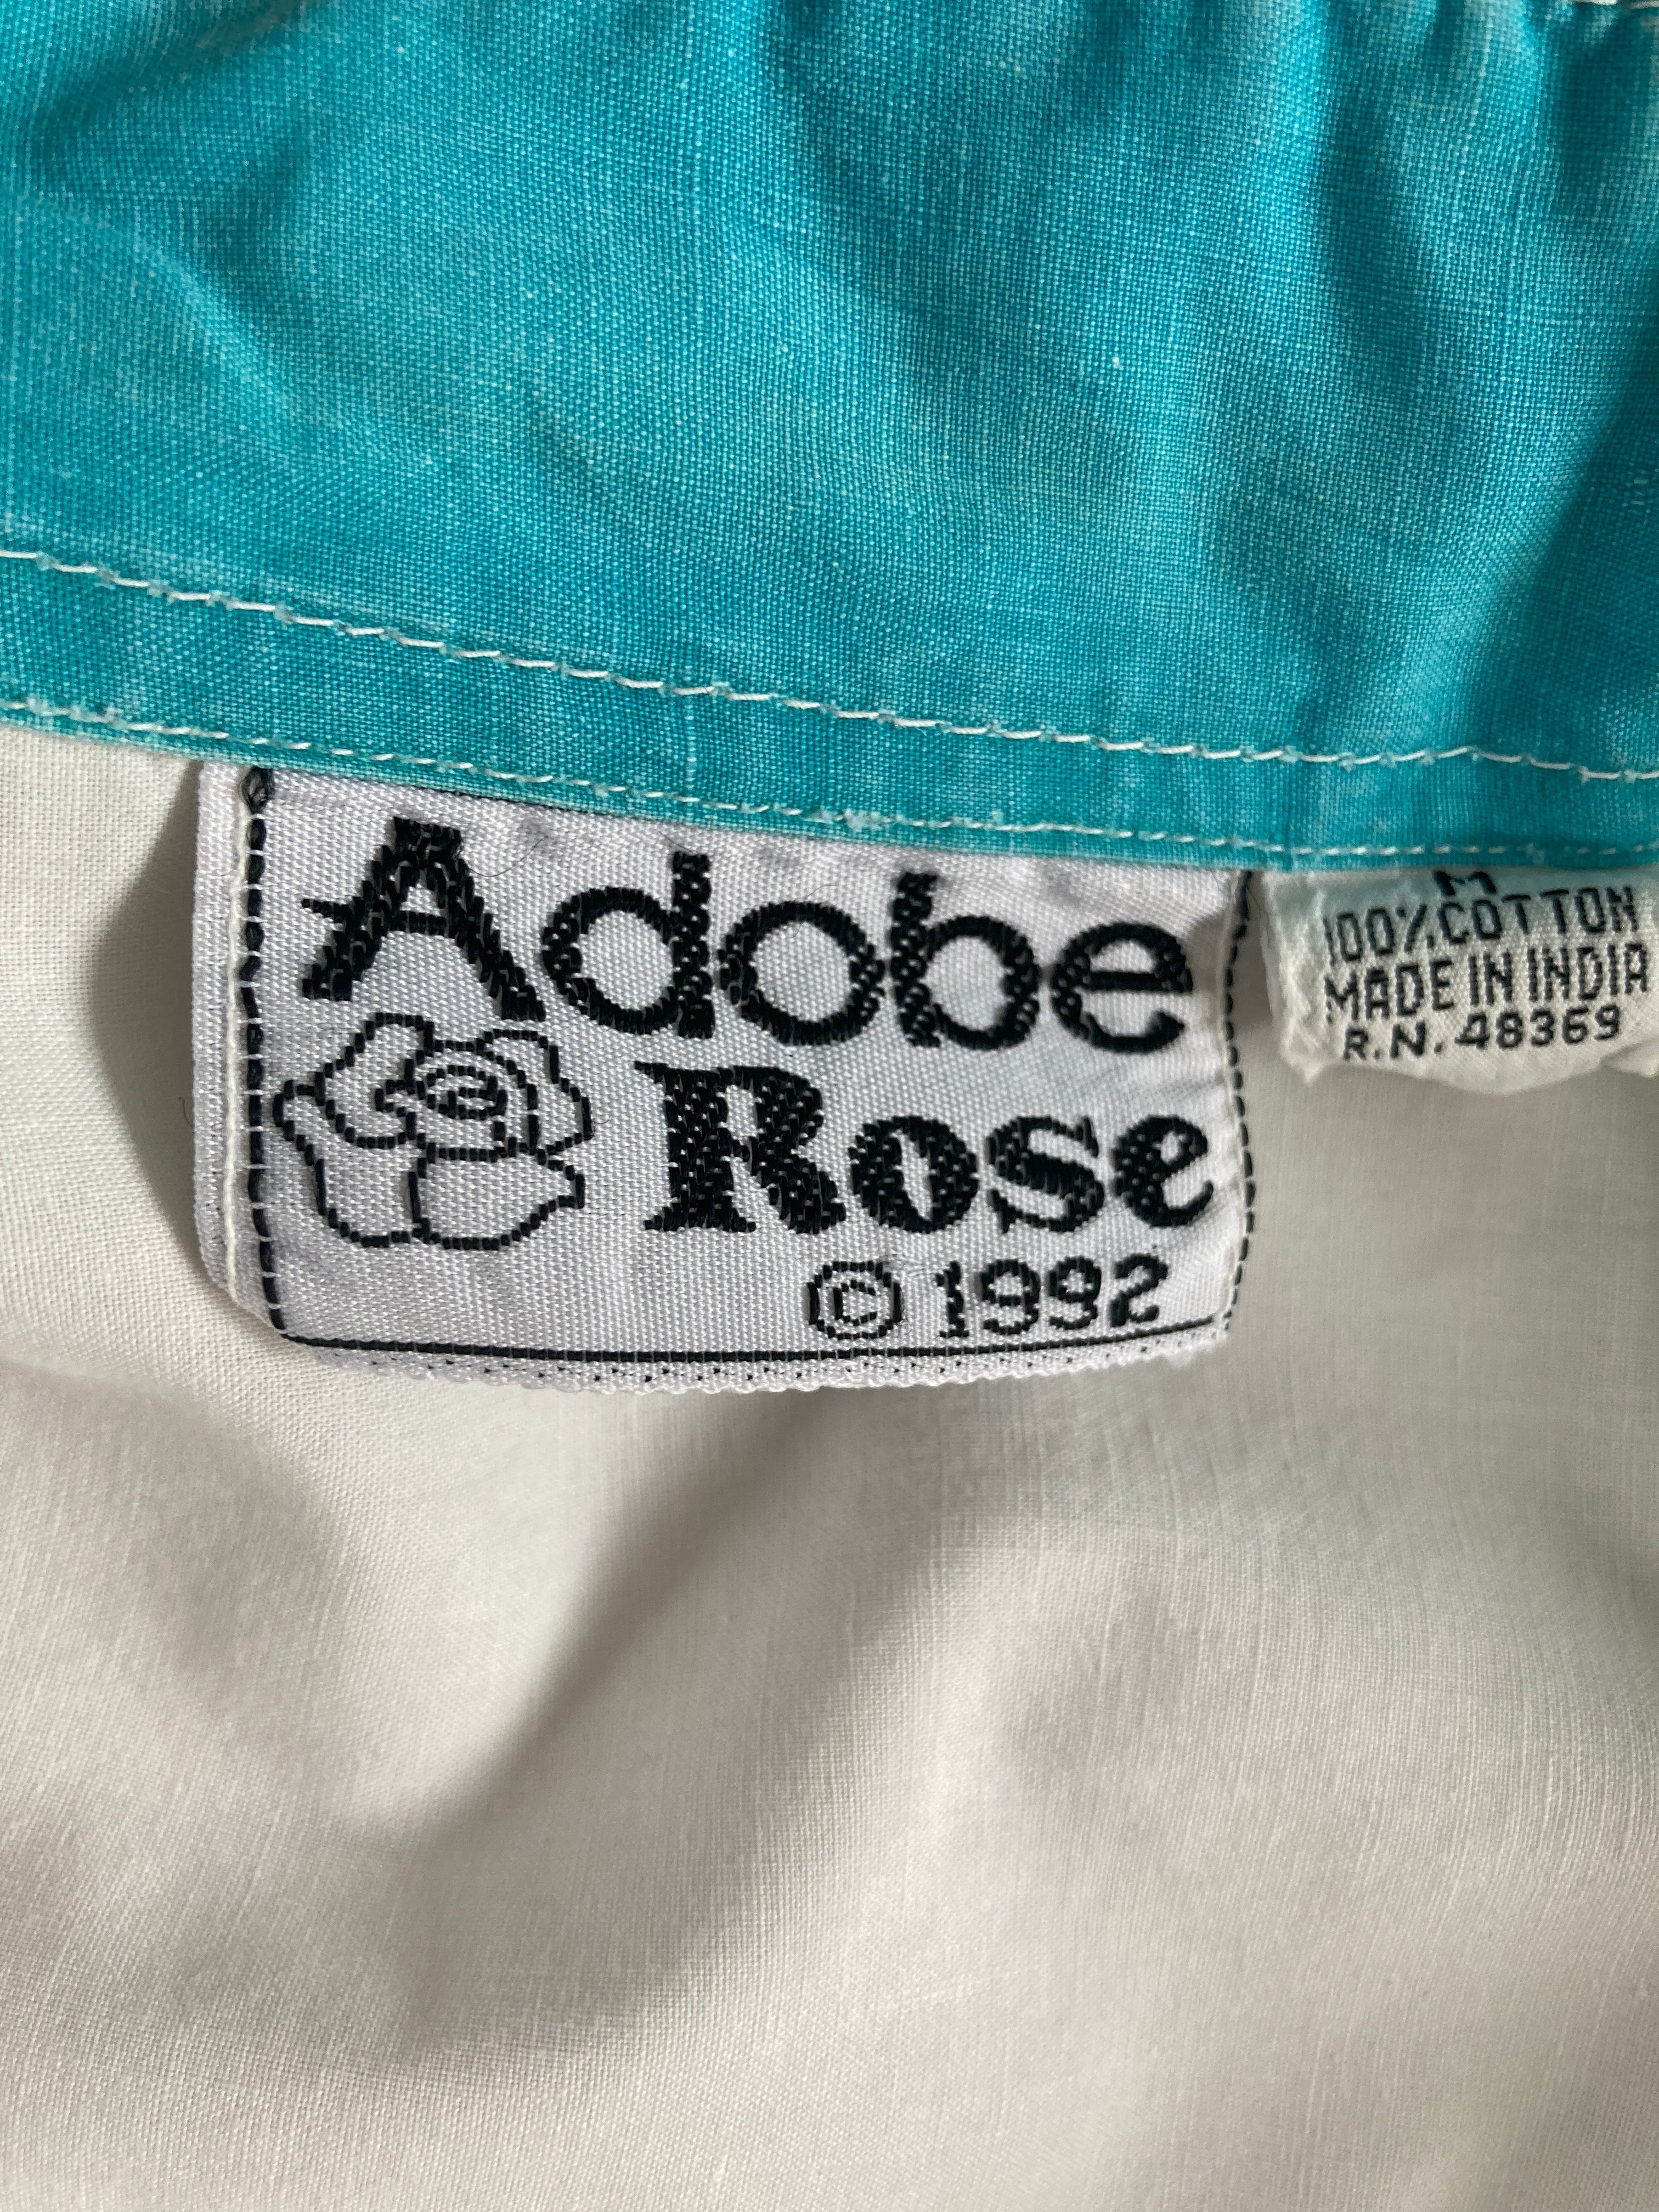 Adobe Rose Vintage Shirt, M